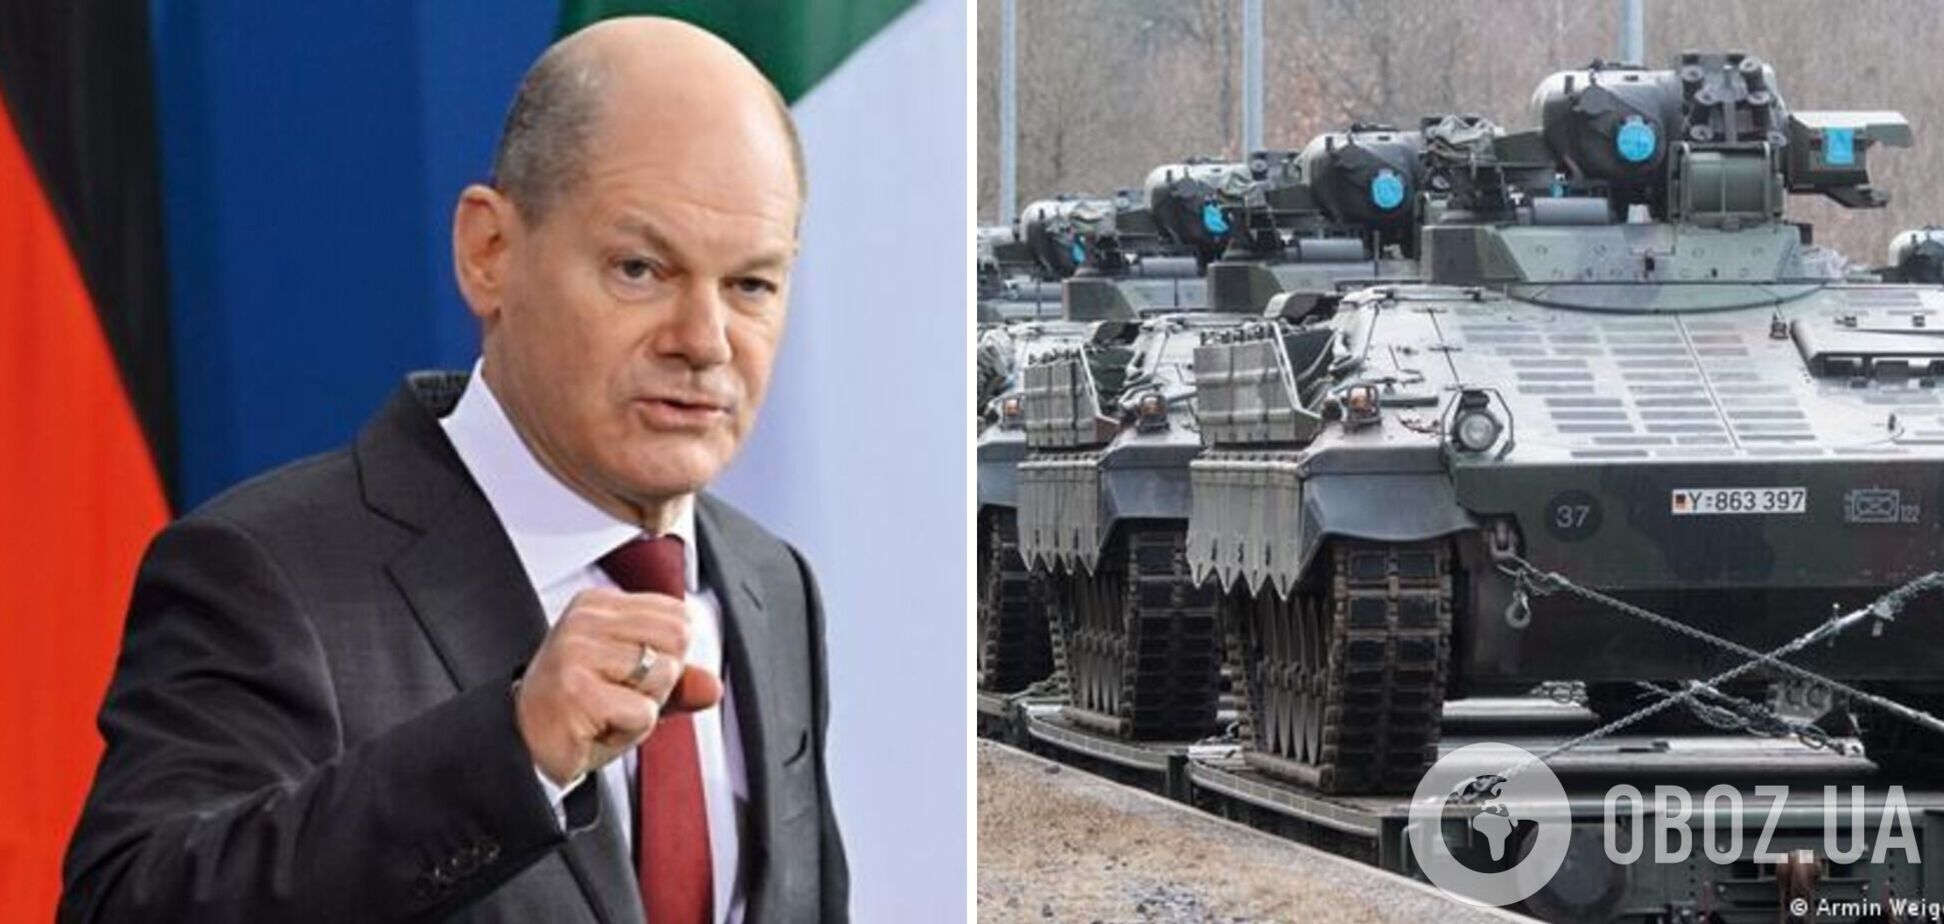 Германия готовит новый пакет военной помощи Украине на 11 млн евро: СМИ узнали детали